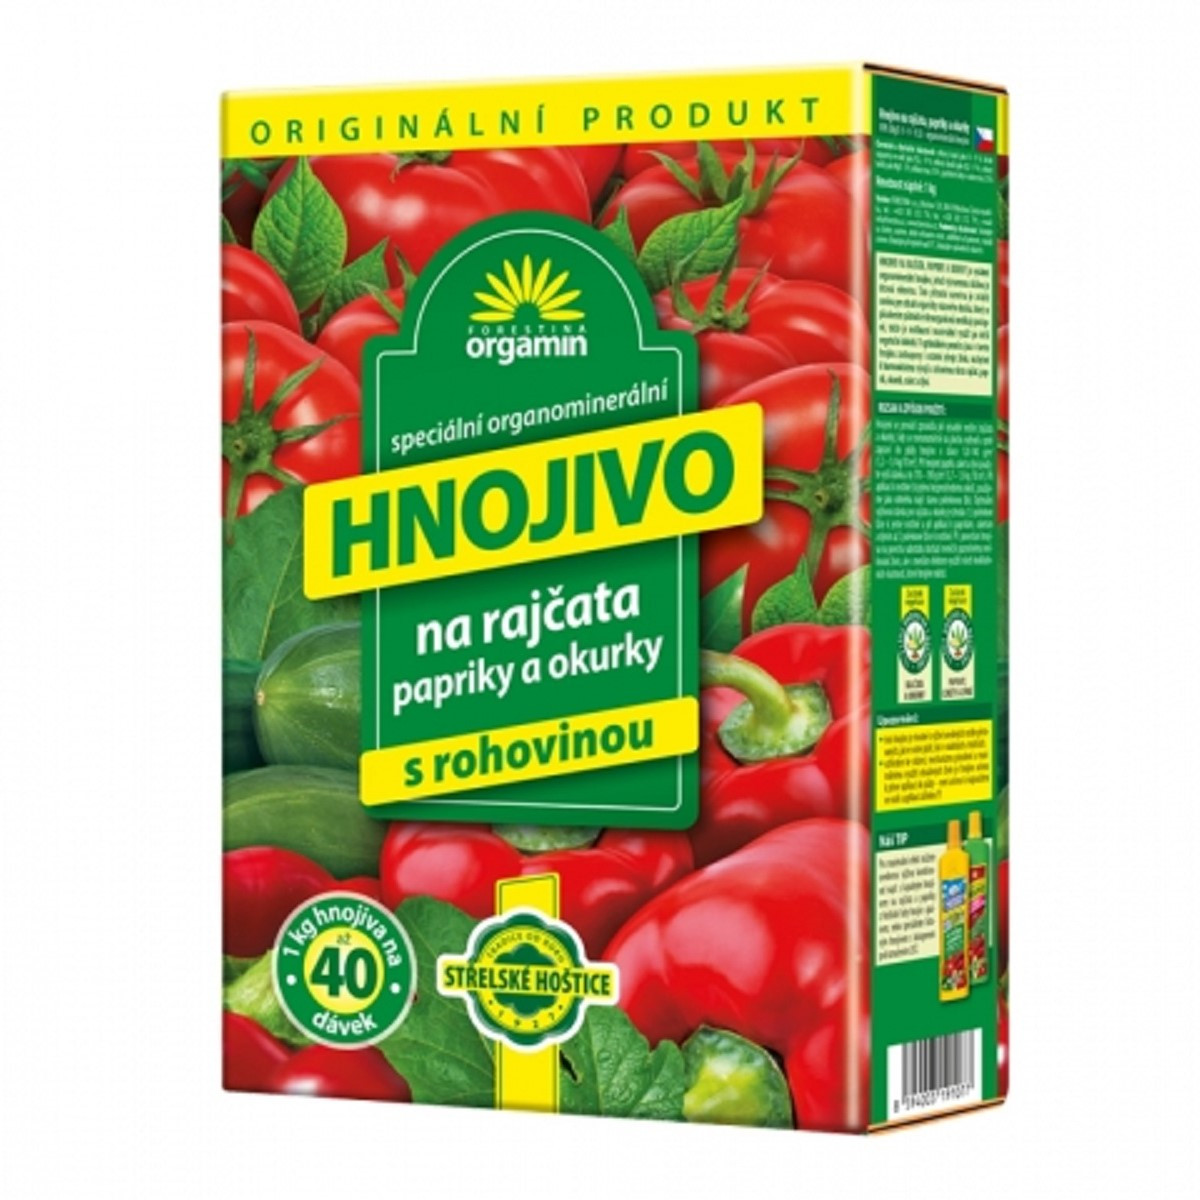 Hnojivo AG Biomin rajčata - hnojivo - 1 kg